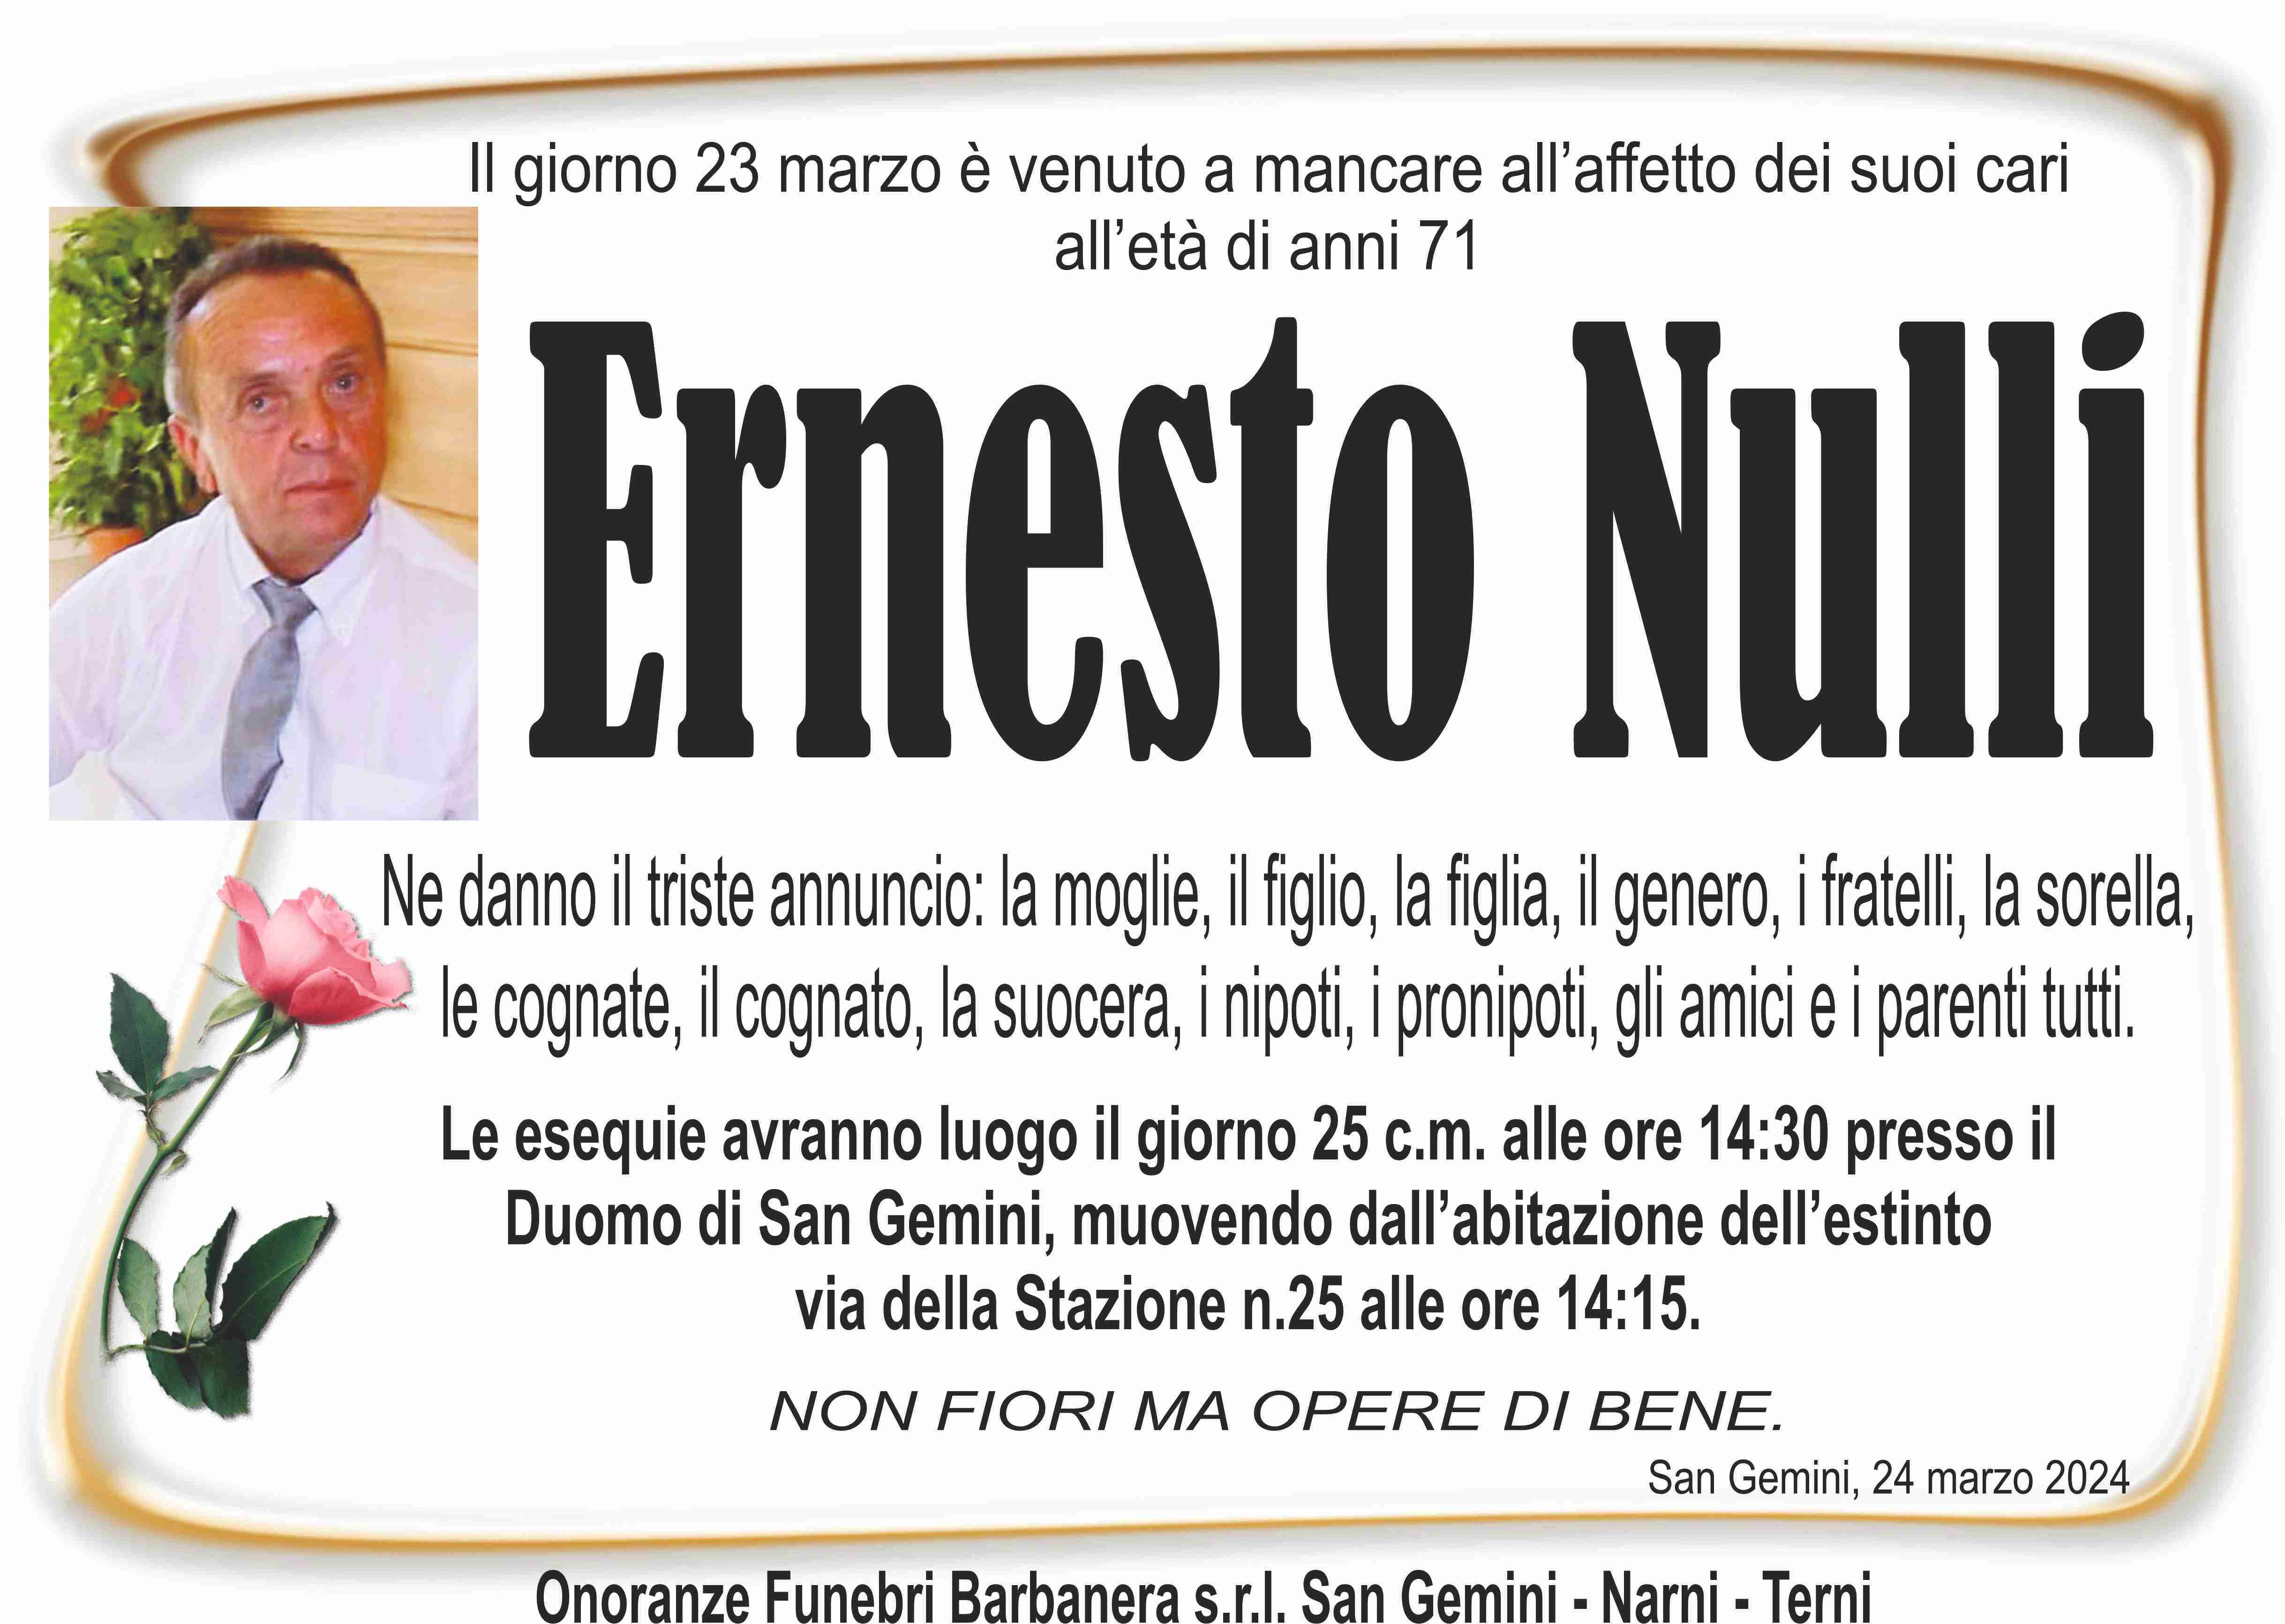 Ernesto Nulli